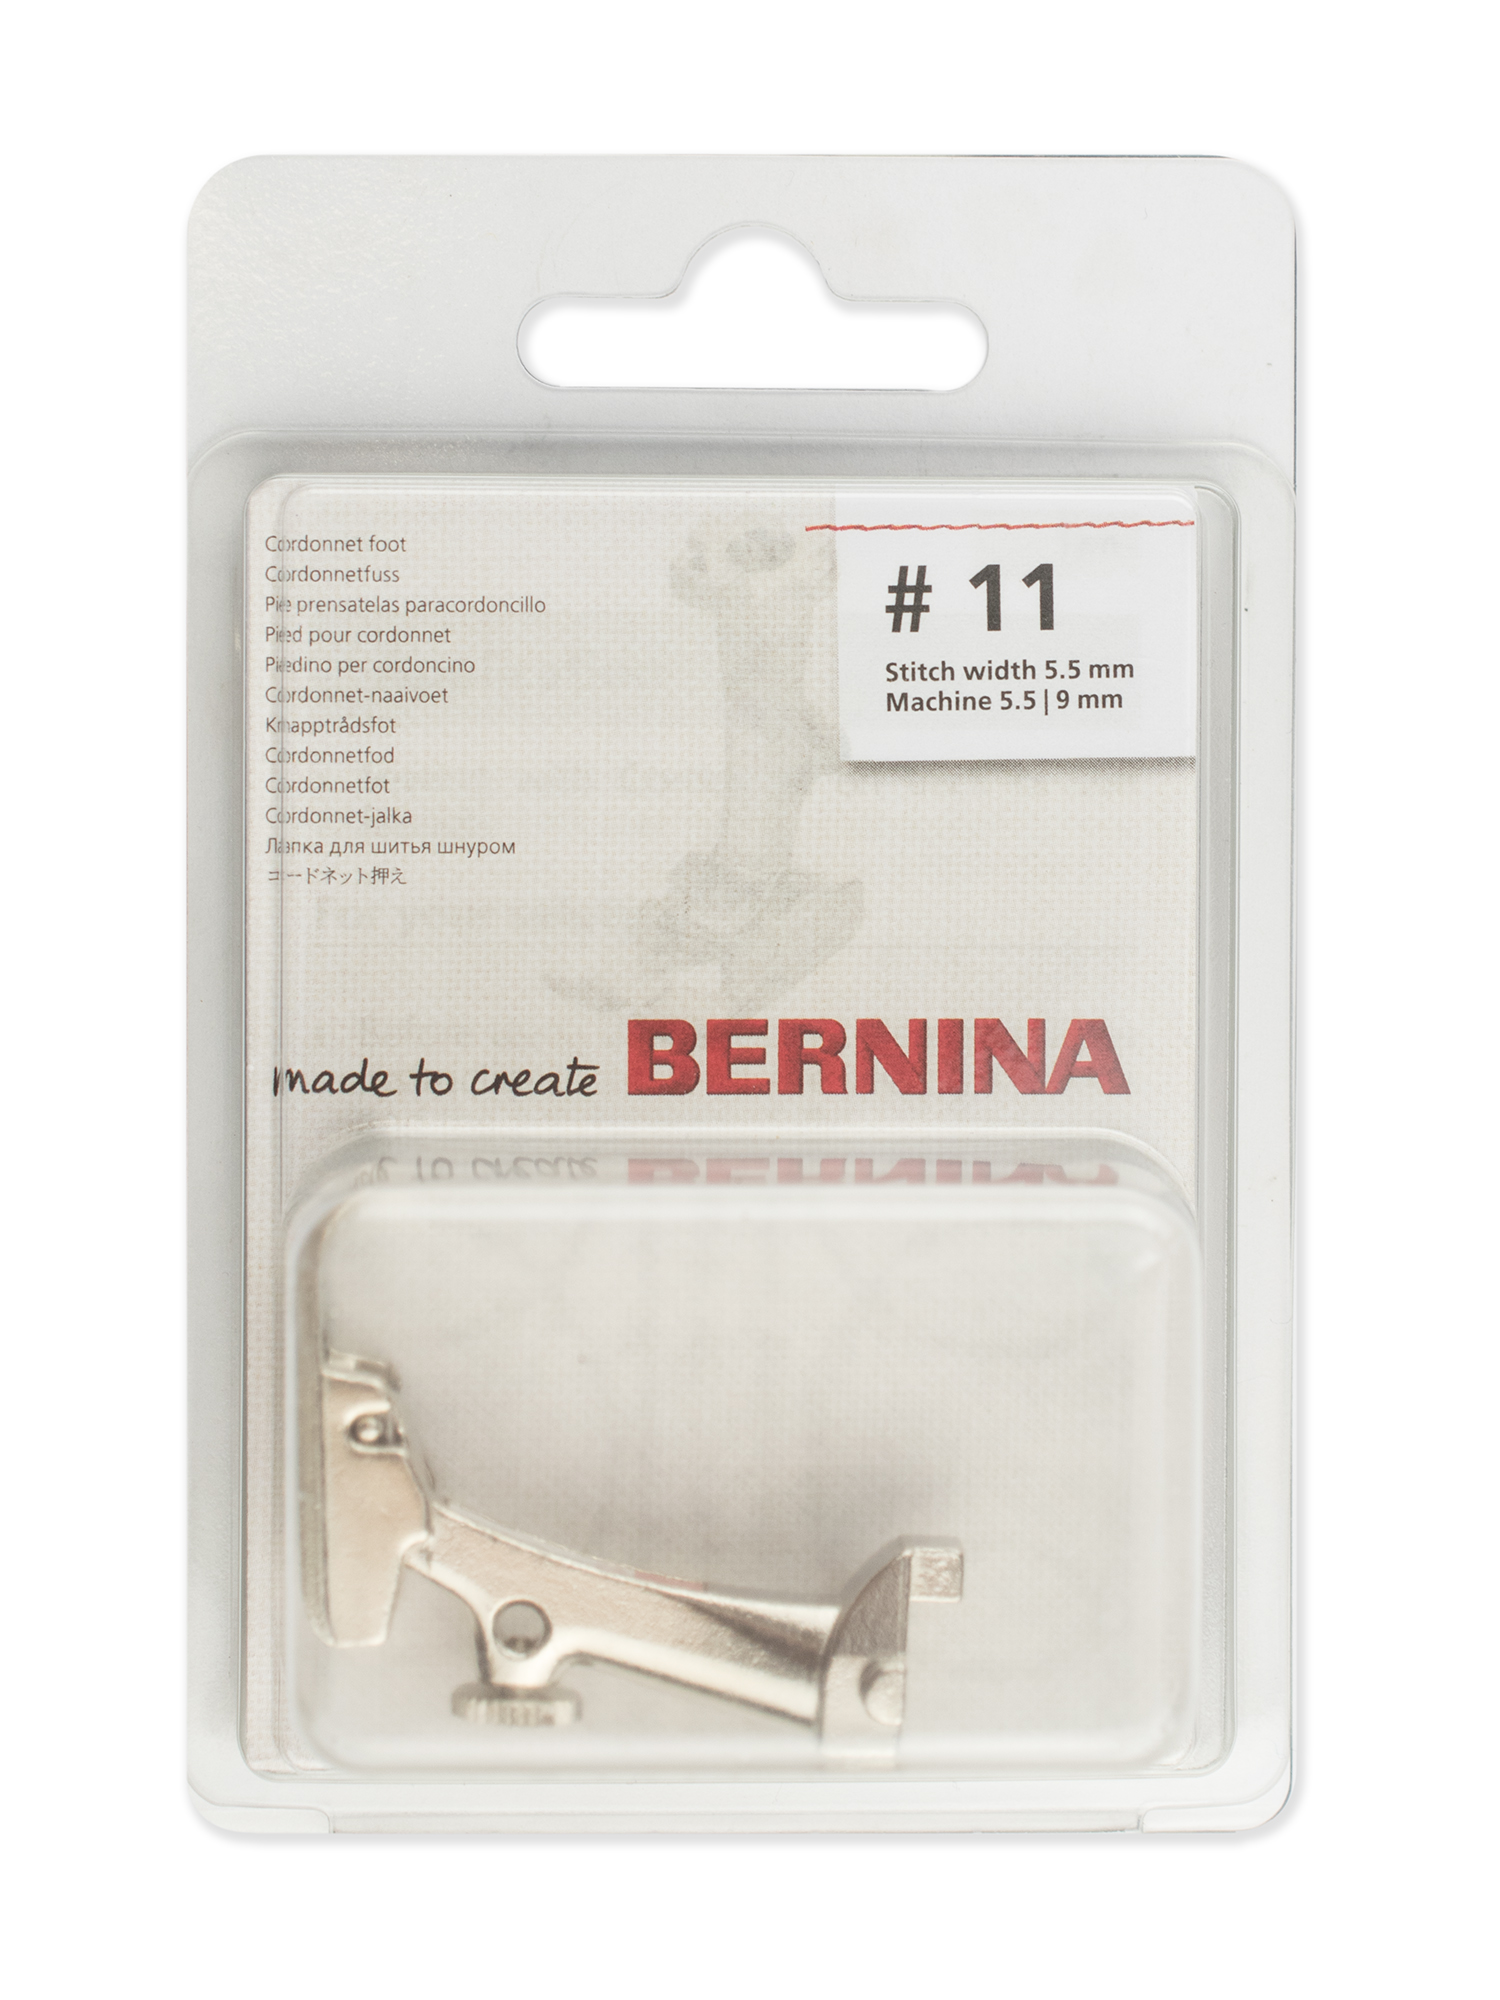 Лапка для шитья шнуром Bernina # 11